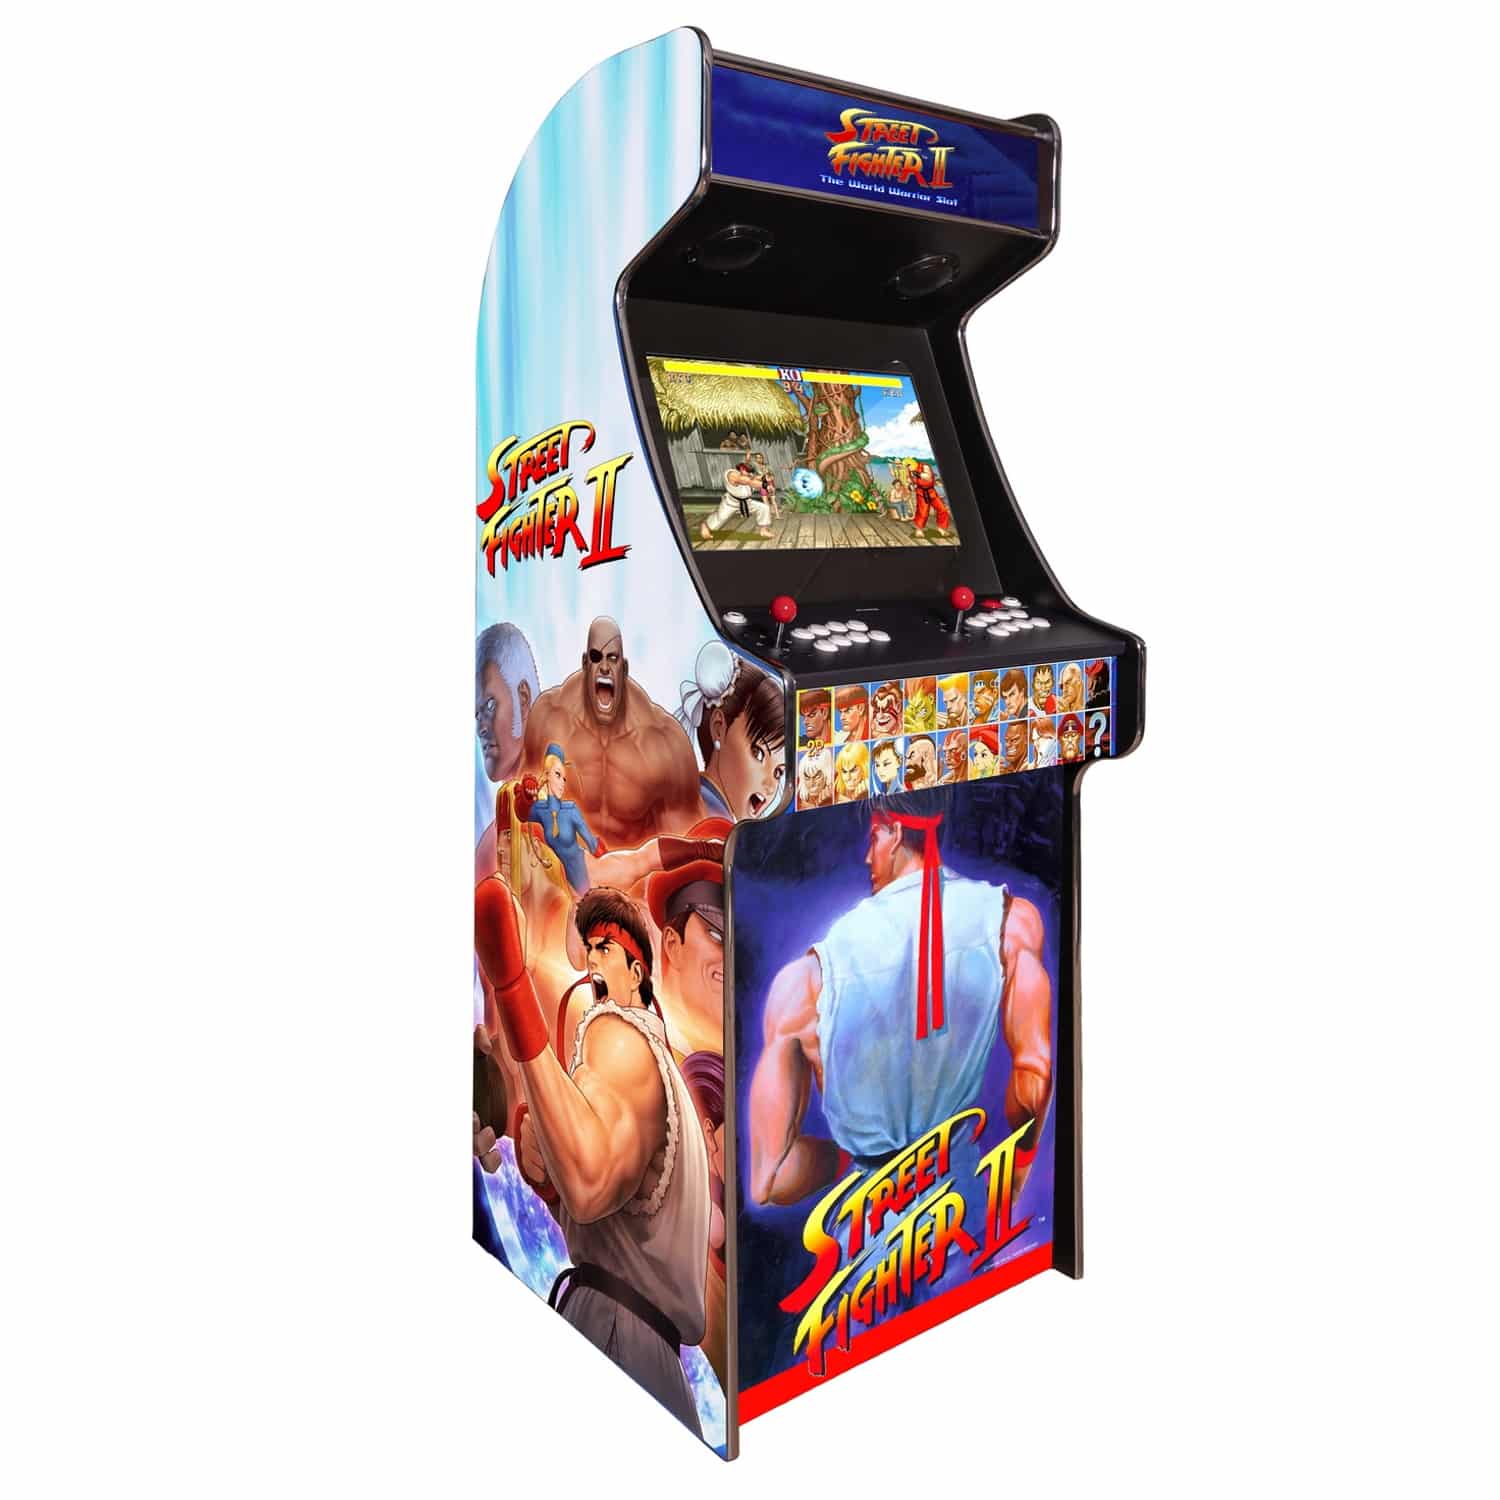 arcade machine borne born jeux cafe anciens retro recalbox neuve moderne hdmi pas cher vente achat prix france belgique streetfighter - Accueil